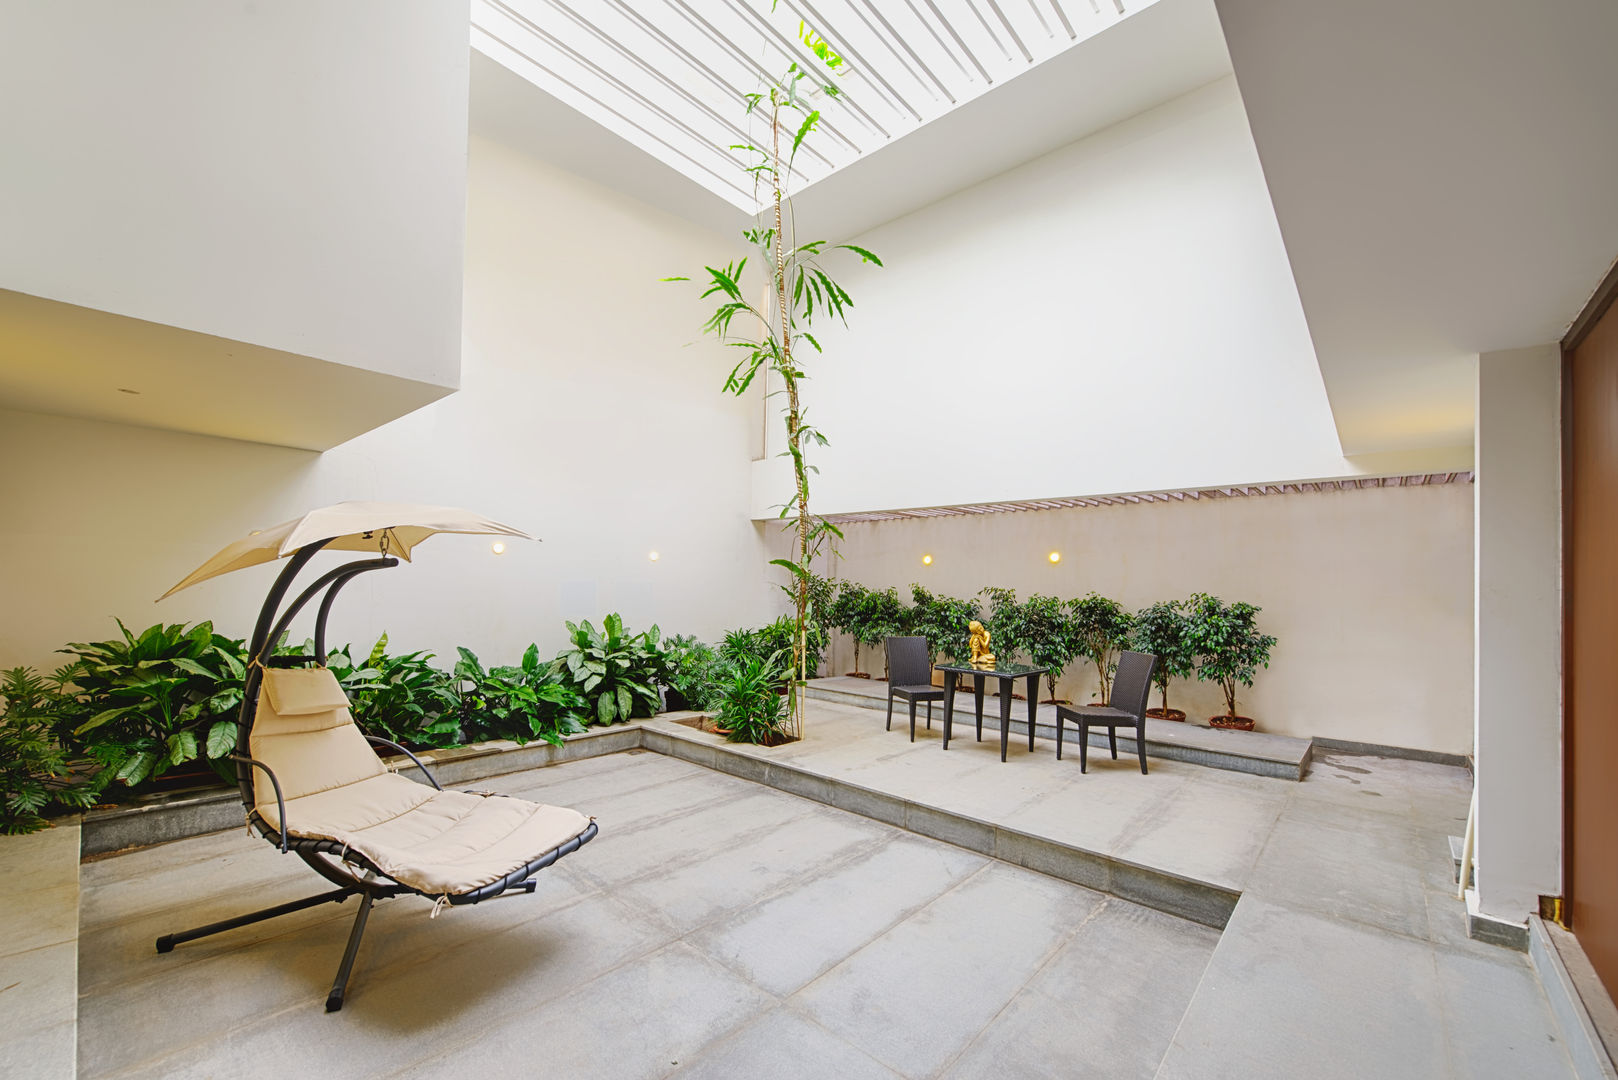 Mobius Home, Architecture Continuous Architecture Continuous Interior garden Interior landscaping